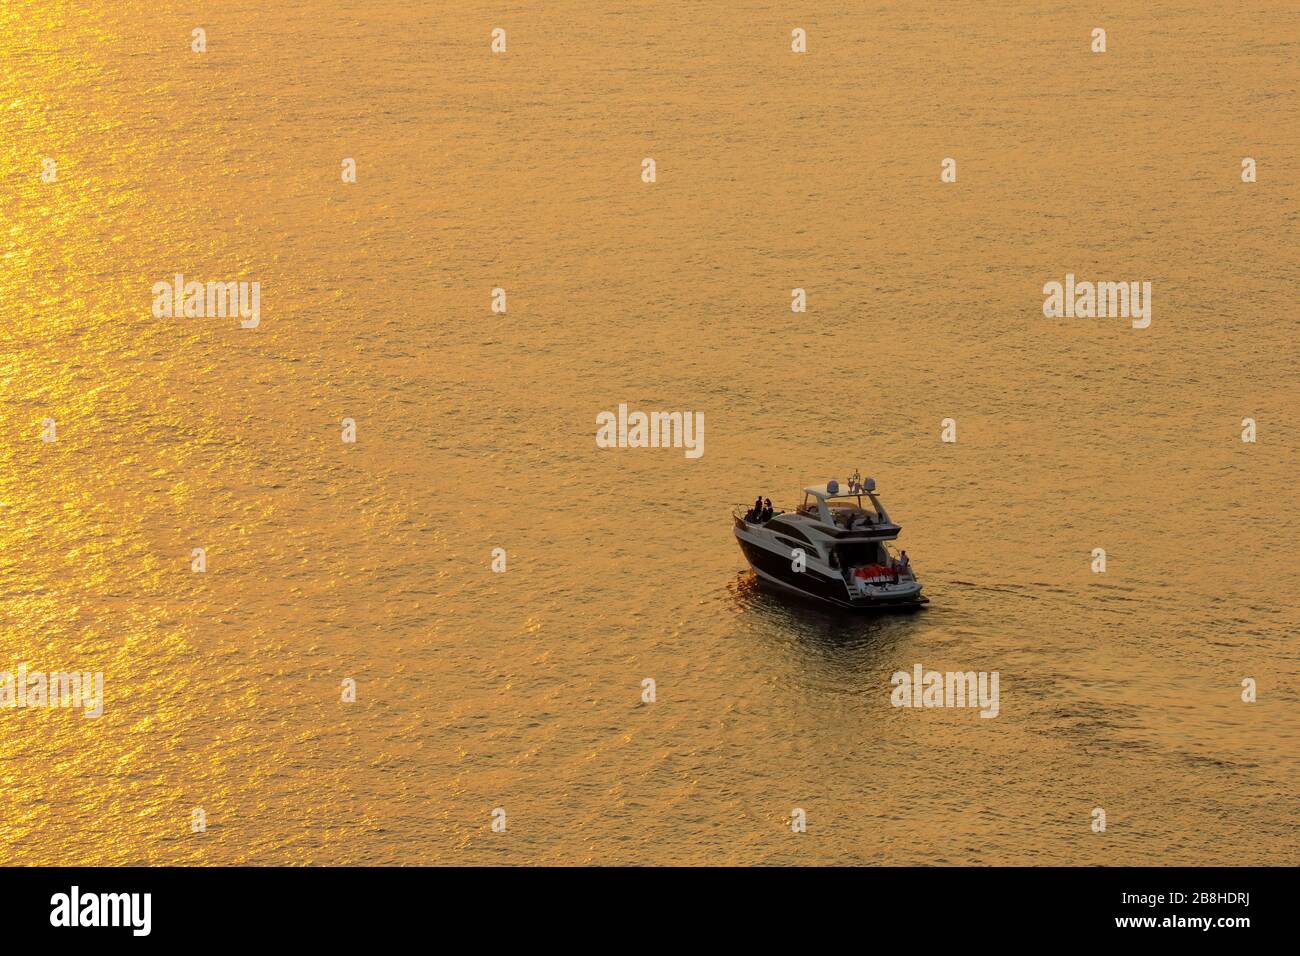 Der Sonnenuntergang an der Meeresoberfläche spiegelt die Sonne in Gold wider: Der Touristenpark das Boot, um die Schönheit der Sonne zu sehen. Stockfoto